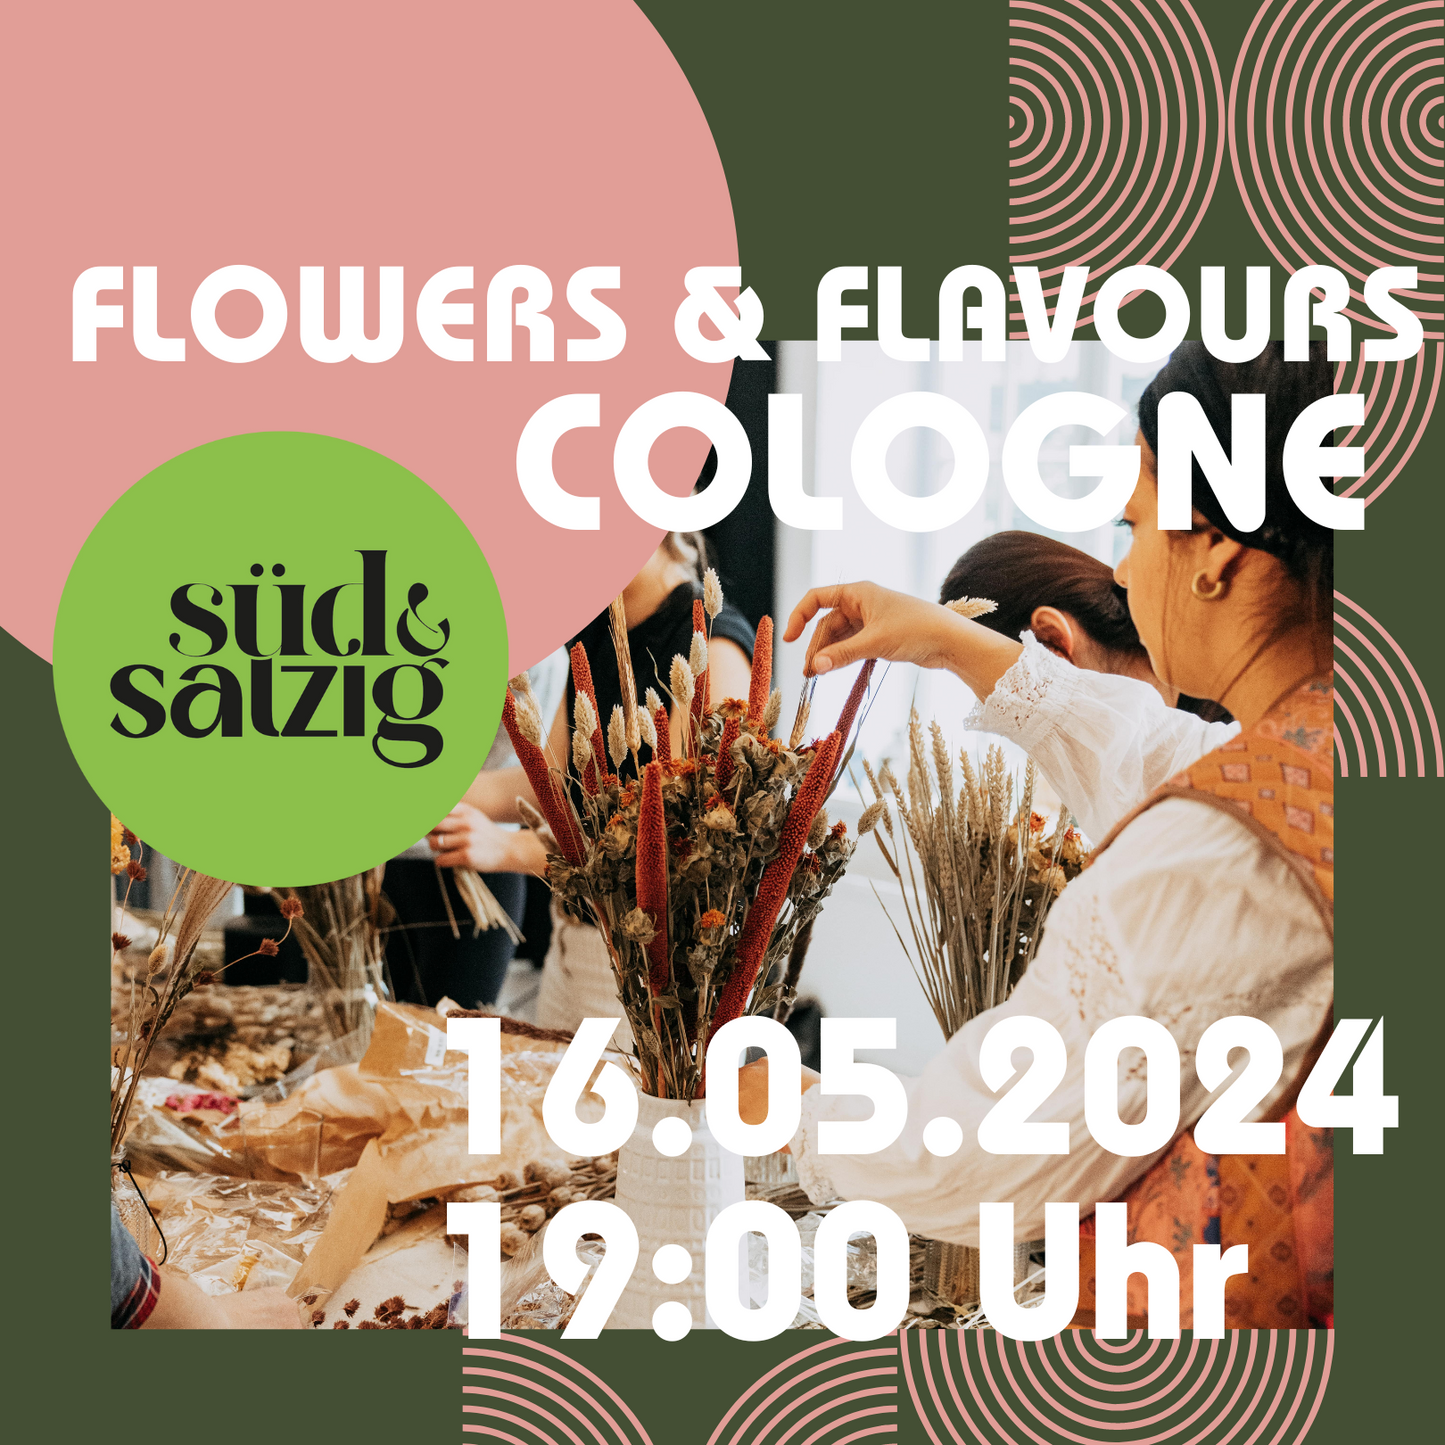 FLOWERS & FLAVOURS - Trockenblumenbouquet Workshop und Drinks Café Süd & Salzig Köln 16.05.2024 19 Uhr